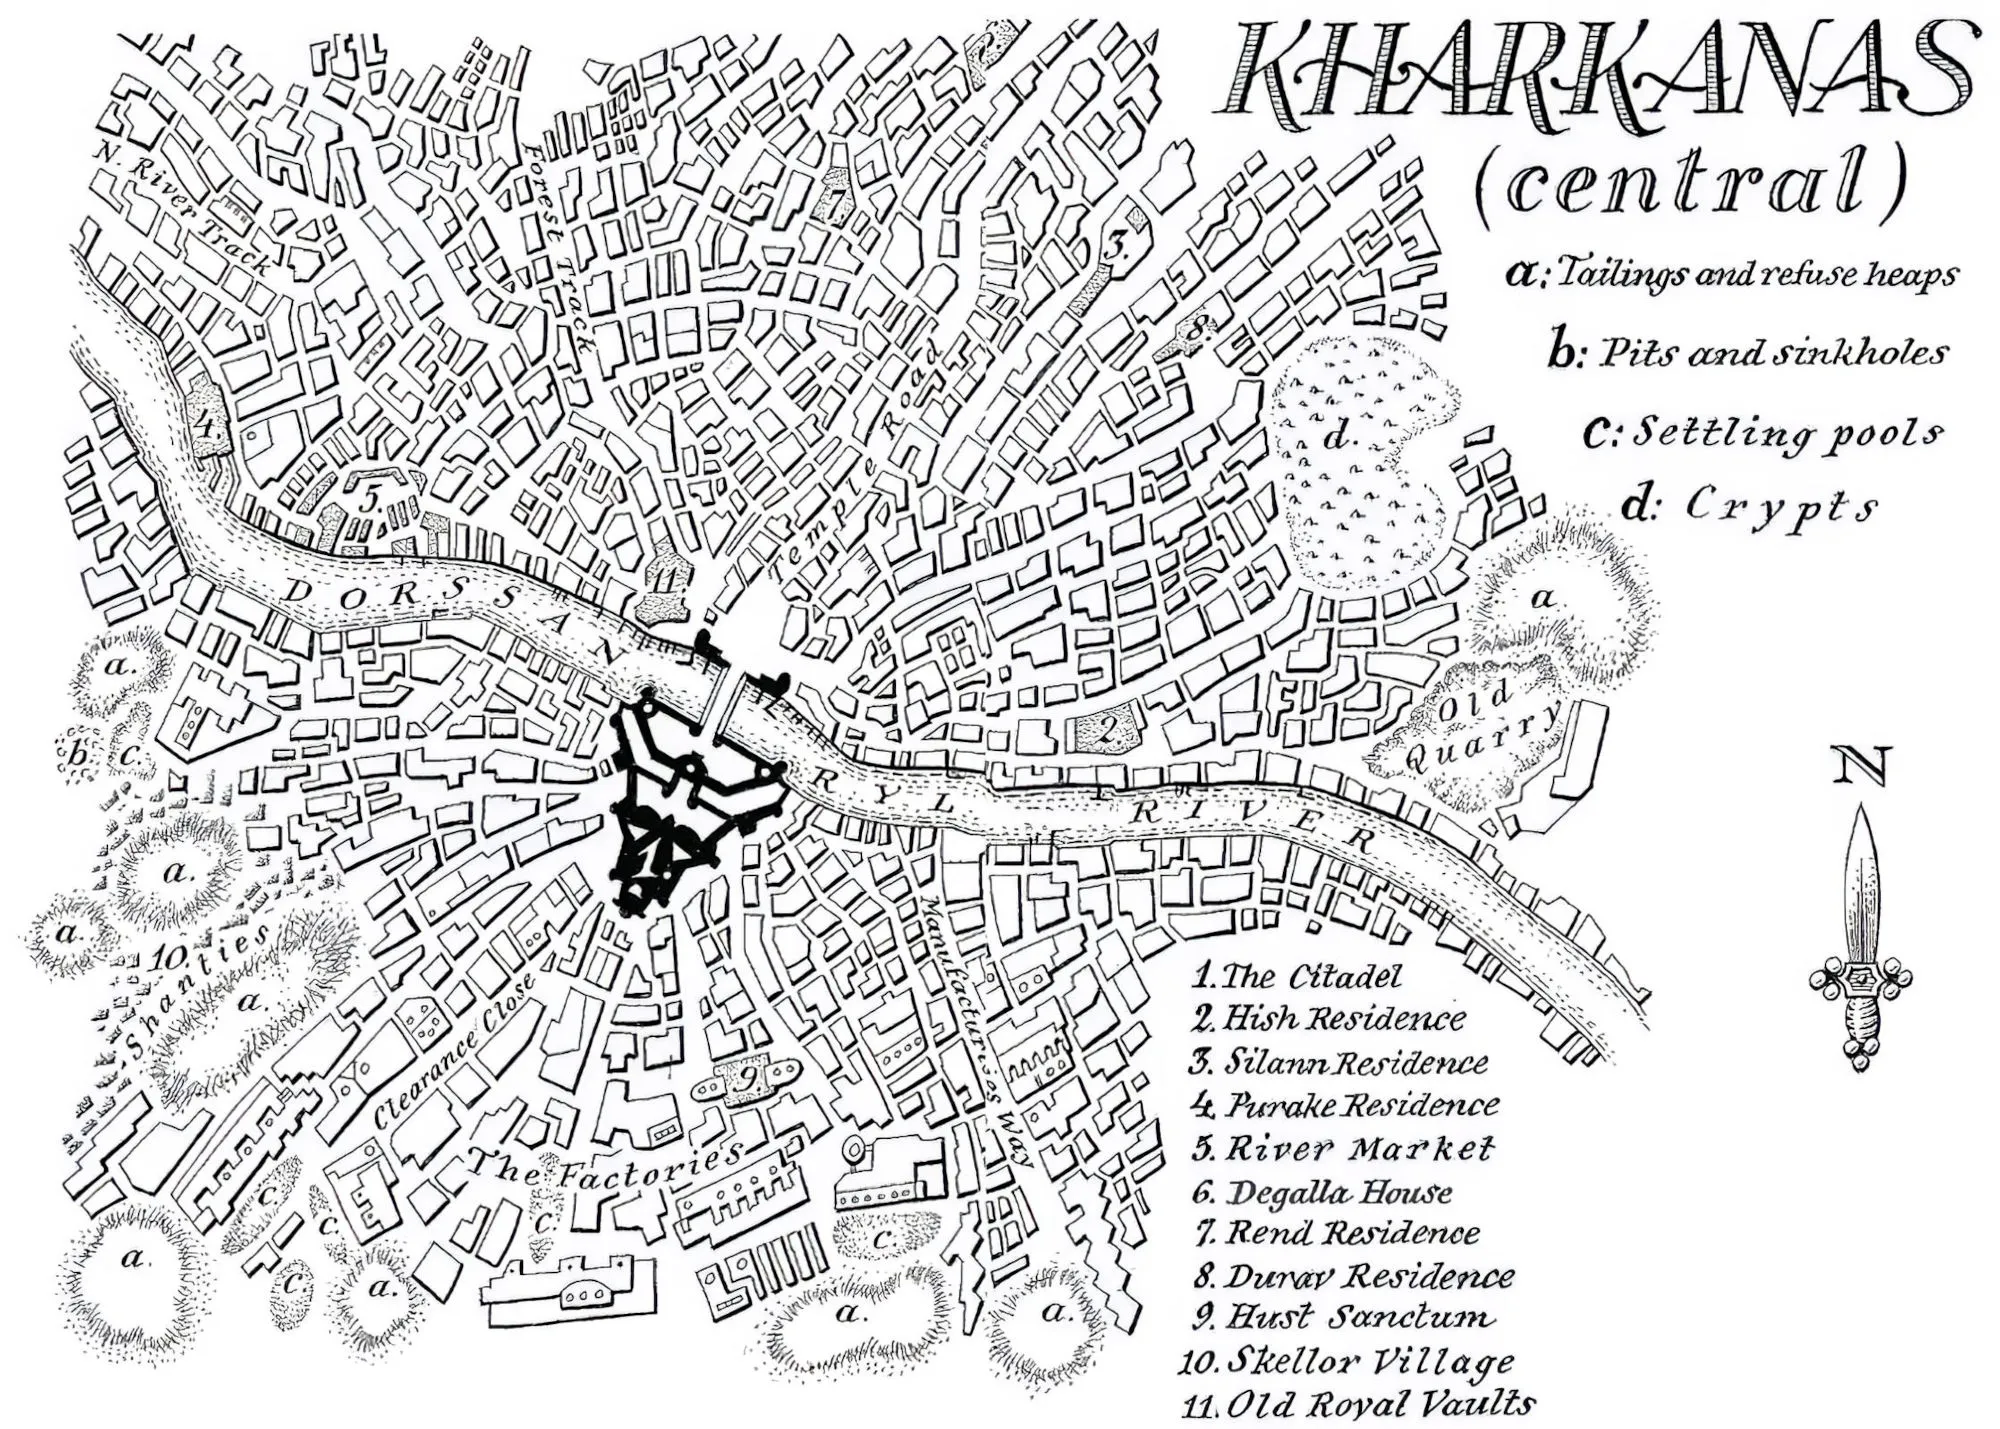 Map of Kharkanas